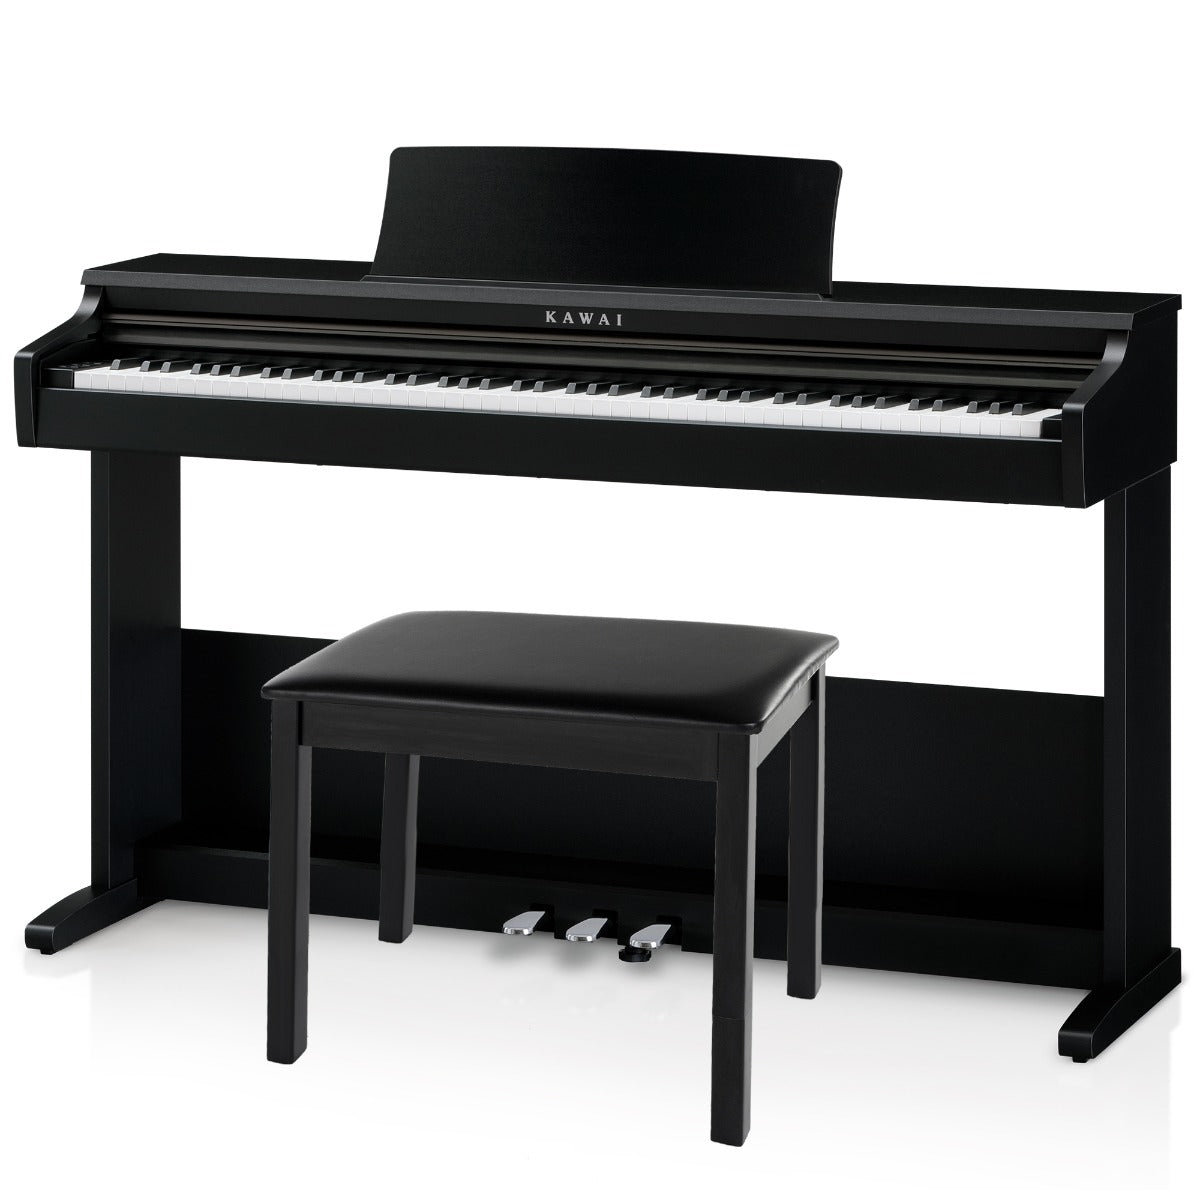 Image of Kawai KDP75 Digital Piano - Black with bench